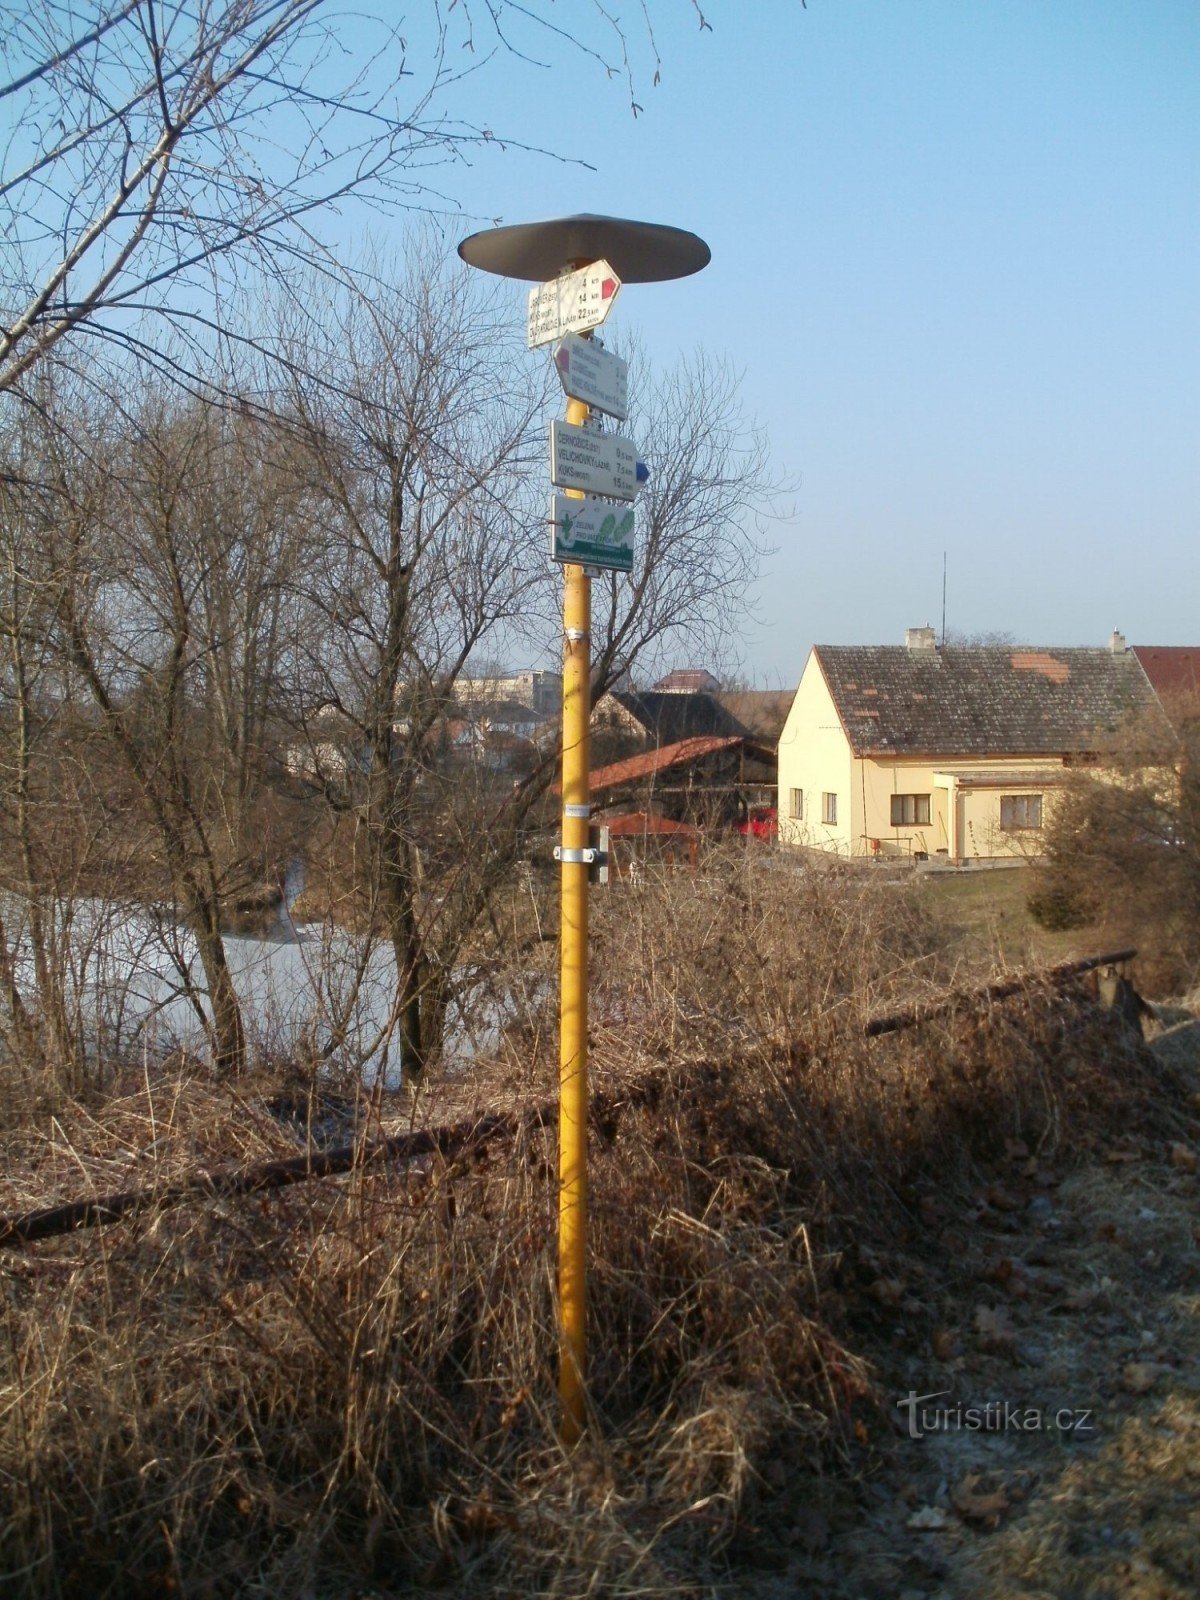 ngã tư du lịch Černožice - cầu